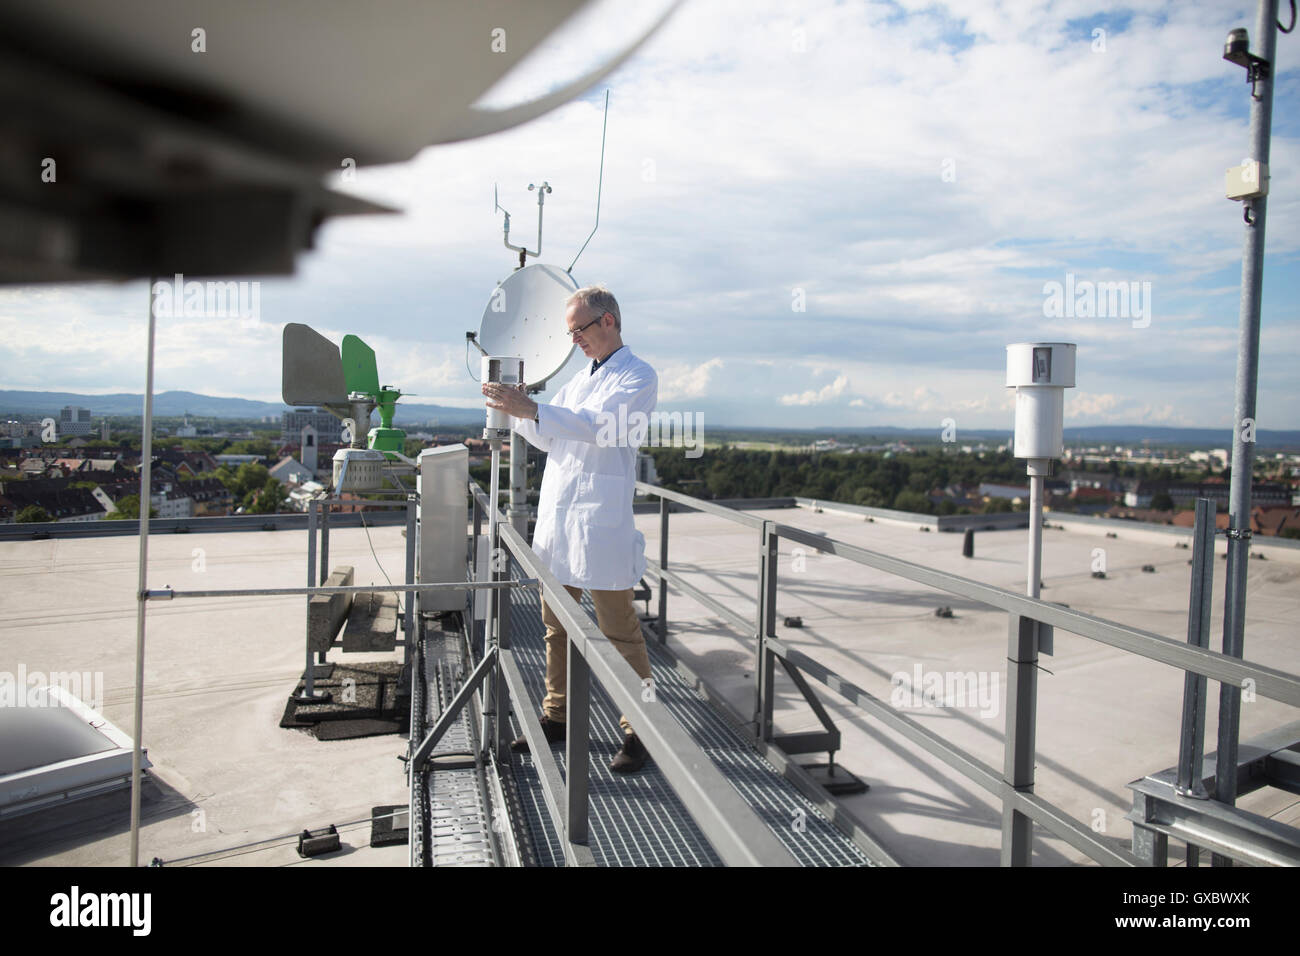 Voce maschile meteorologo aggiornamento attrezzature meteorologiche misurazioni sul tetto della stazione meteo Foto Stock